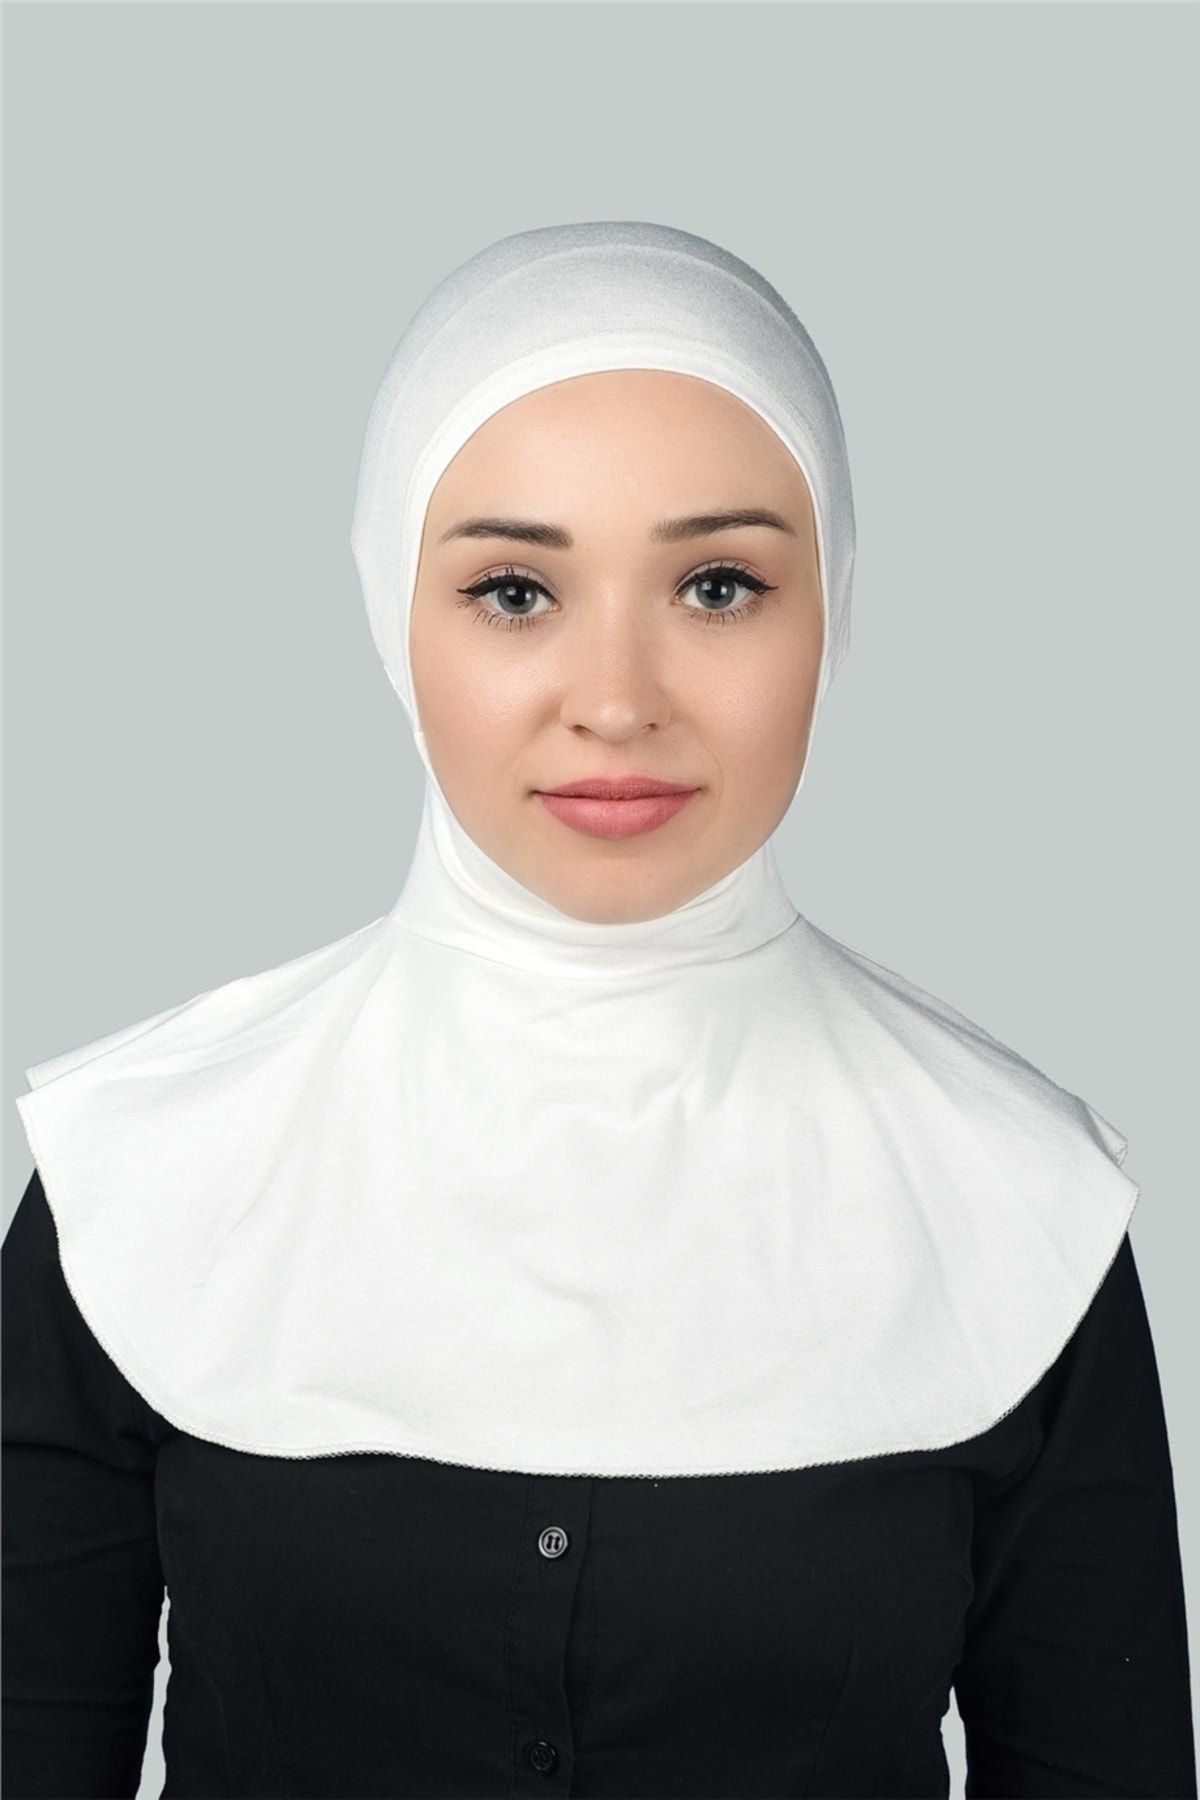 Altobeh Kadın Tesettür Pratik Boyunluklu Hijab - Sporcu Bone - Ekru